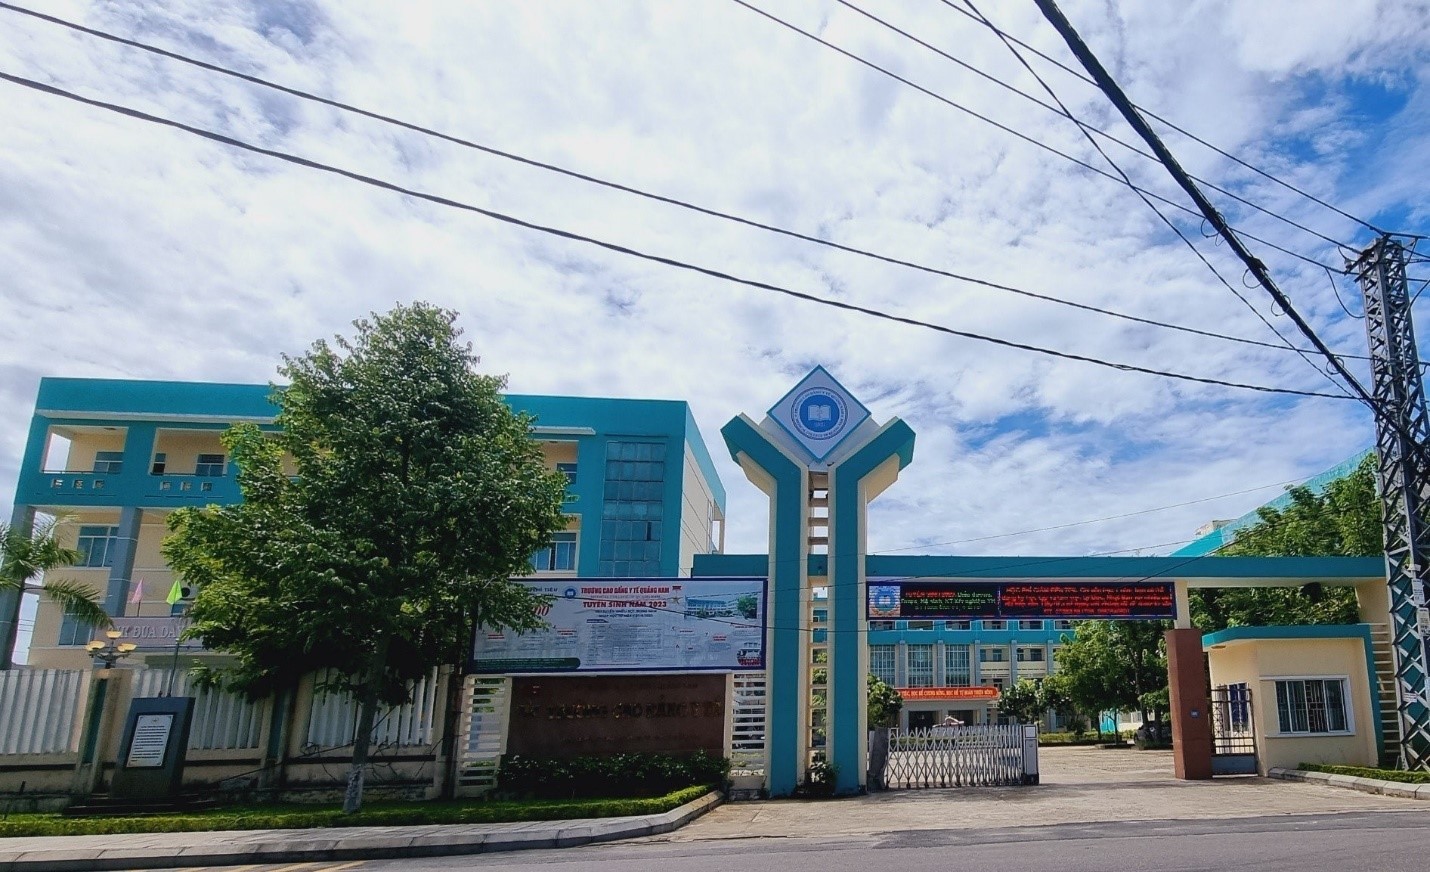 Phó chủ tịch UBND tỉnh Quảng Nam điều hành Trường Cao đẳng Y tế Quảng Nam